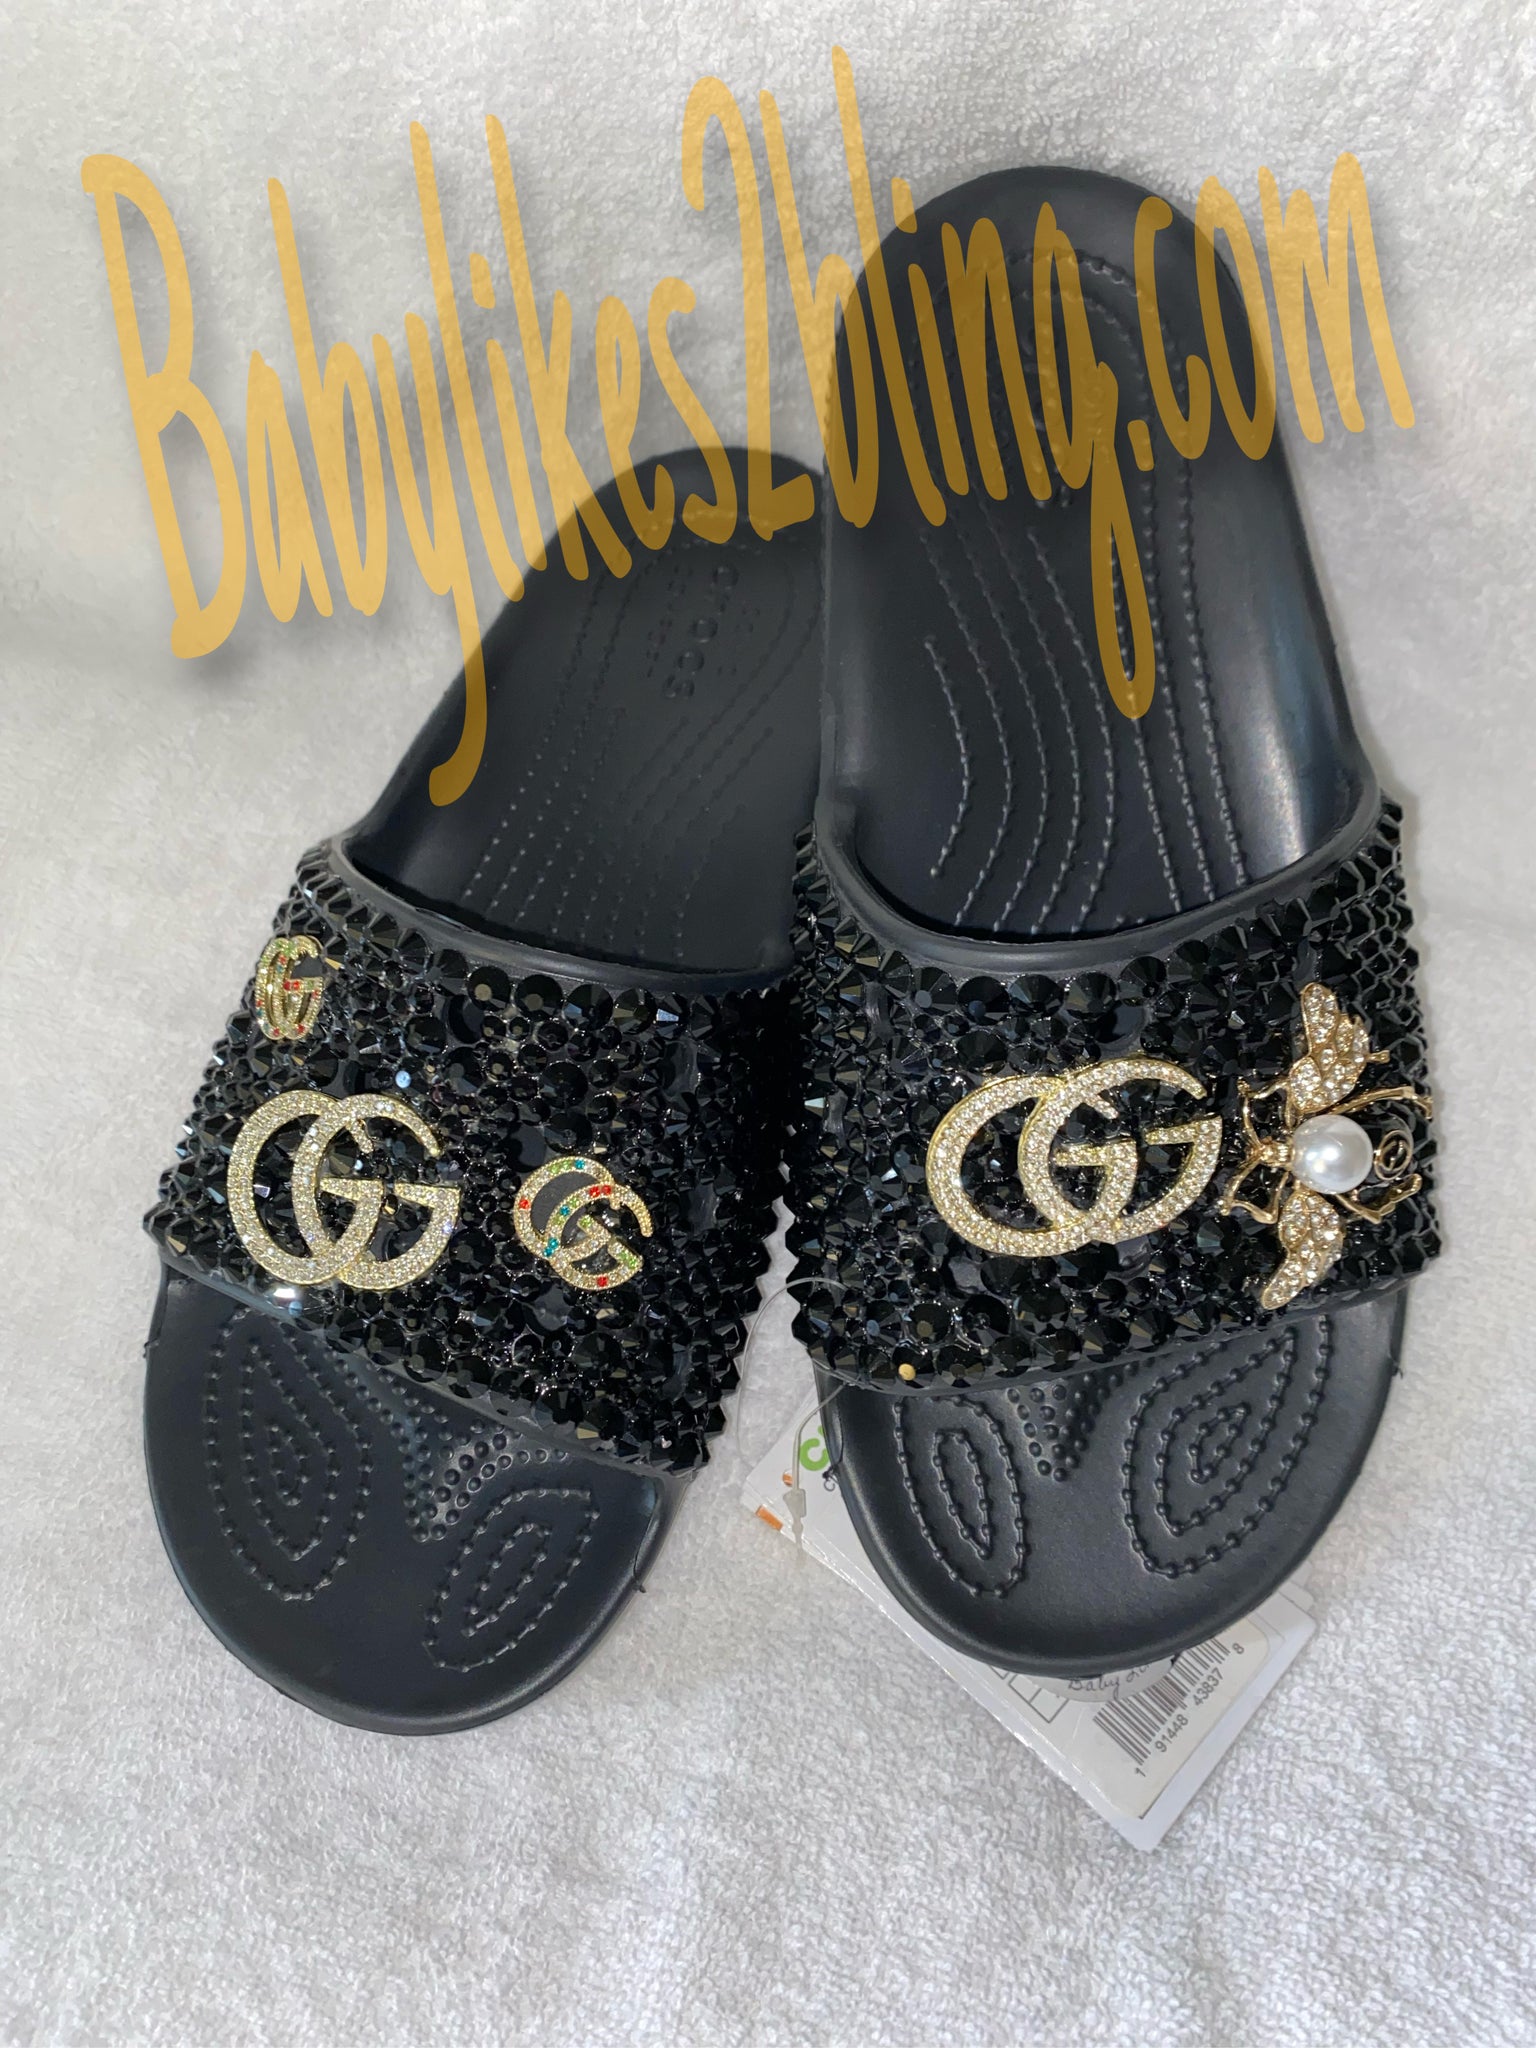 Custom Gucci Crocs Inspired